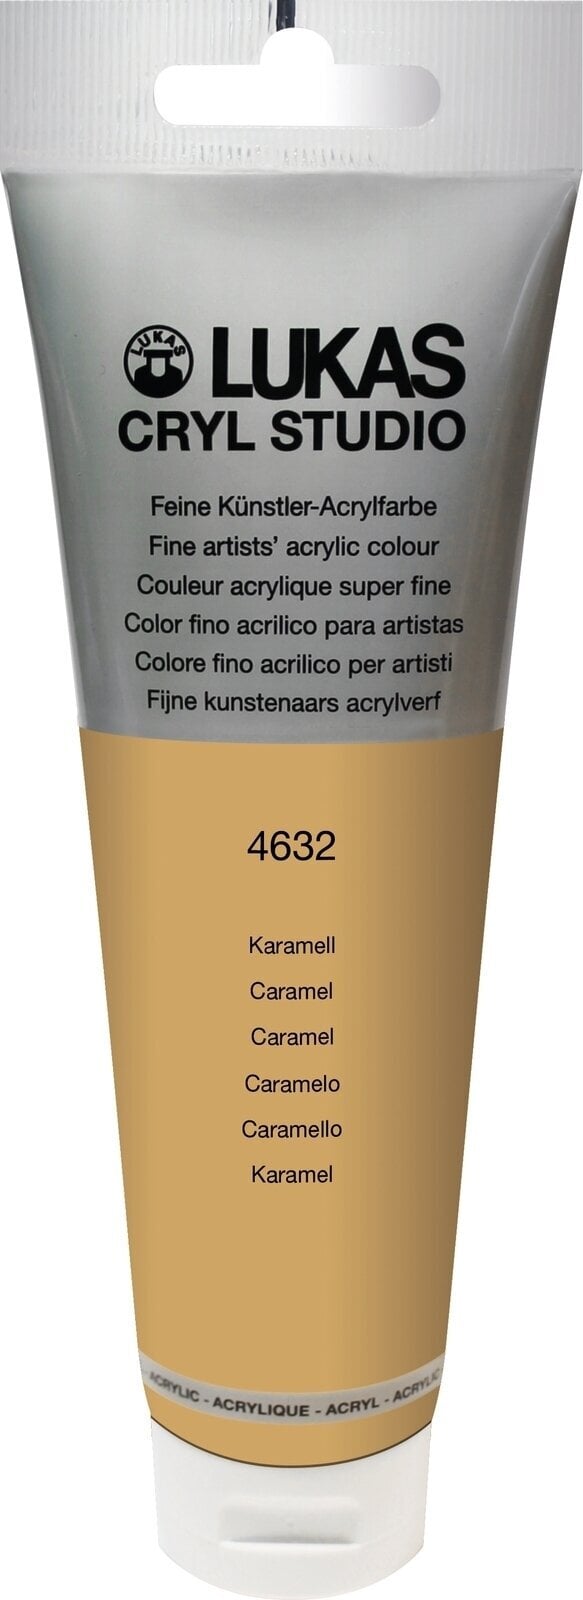 Acrylfarbe Lukas Cryl Studio Acrylic Paint Plastic Tube Acrylfarbe Karamel 125 ml 1 Stck